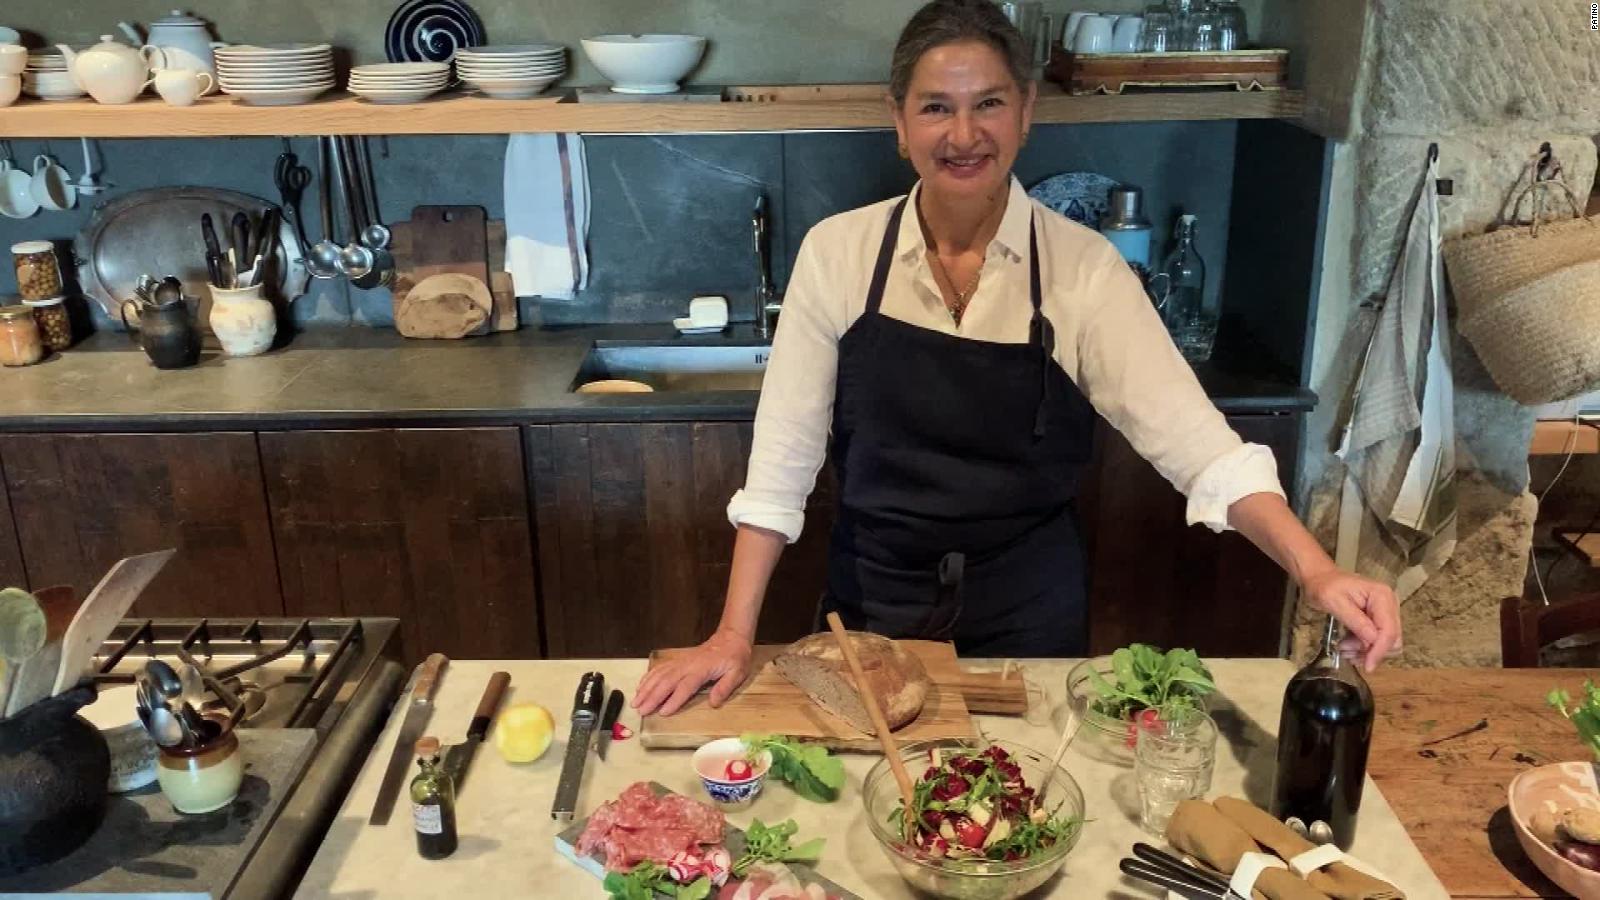 La chef mexicana Mónica Patiño nos enseña a cocinar durante el  confinamiento | Video | CNN